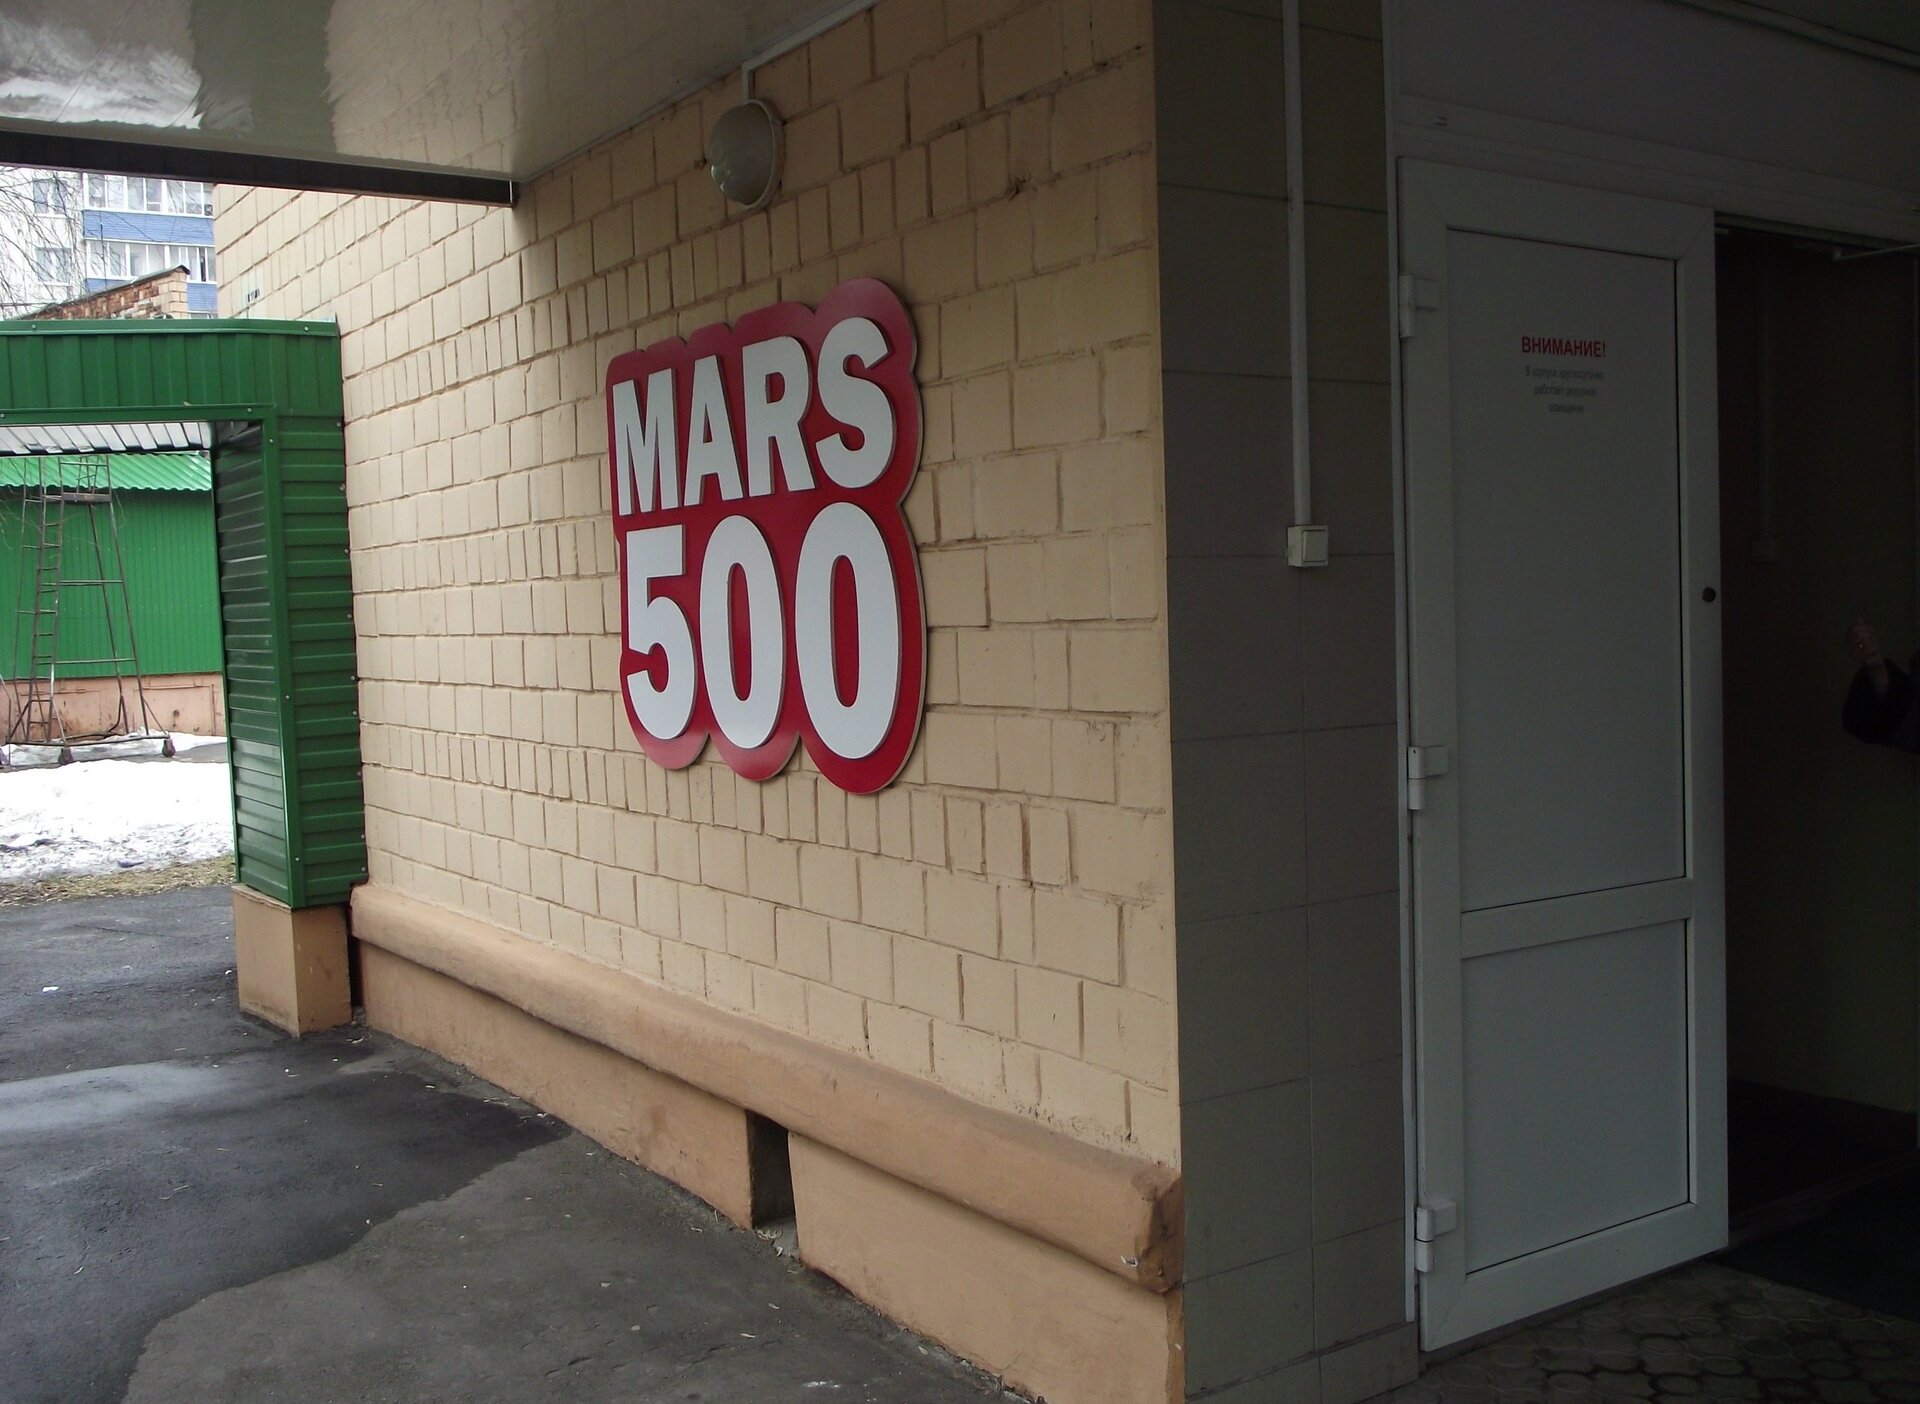 Mars500 on April 11, 2011